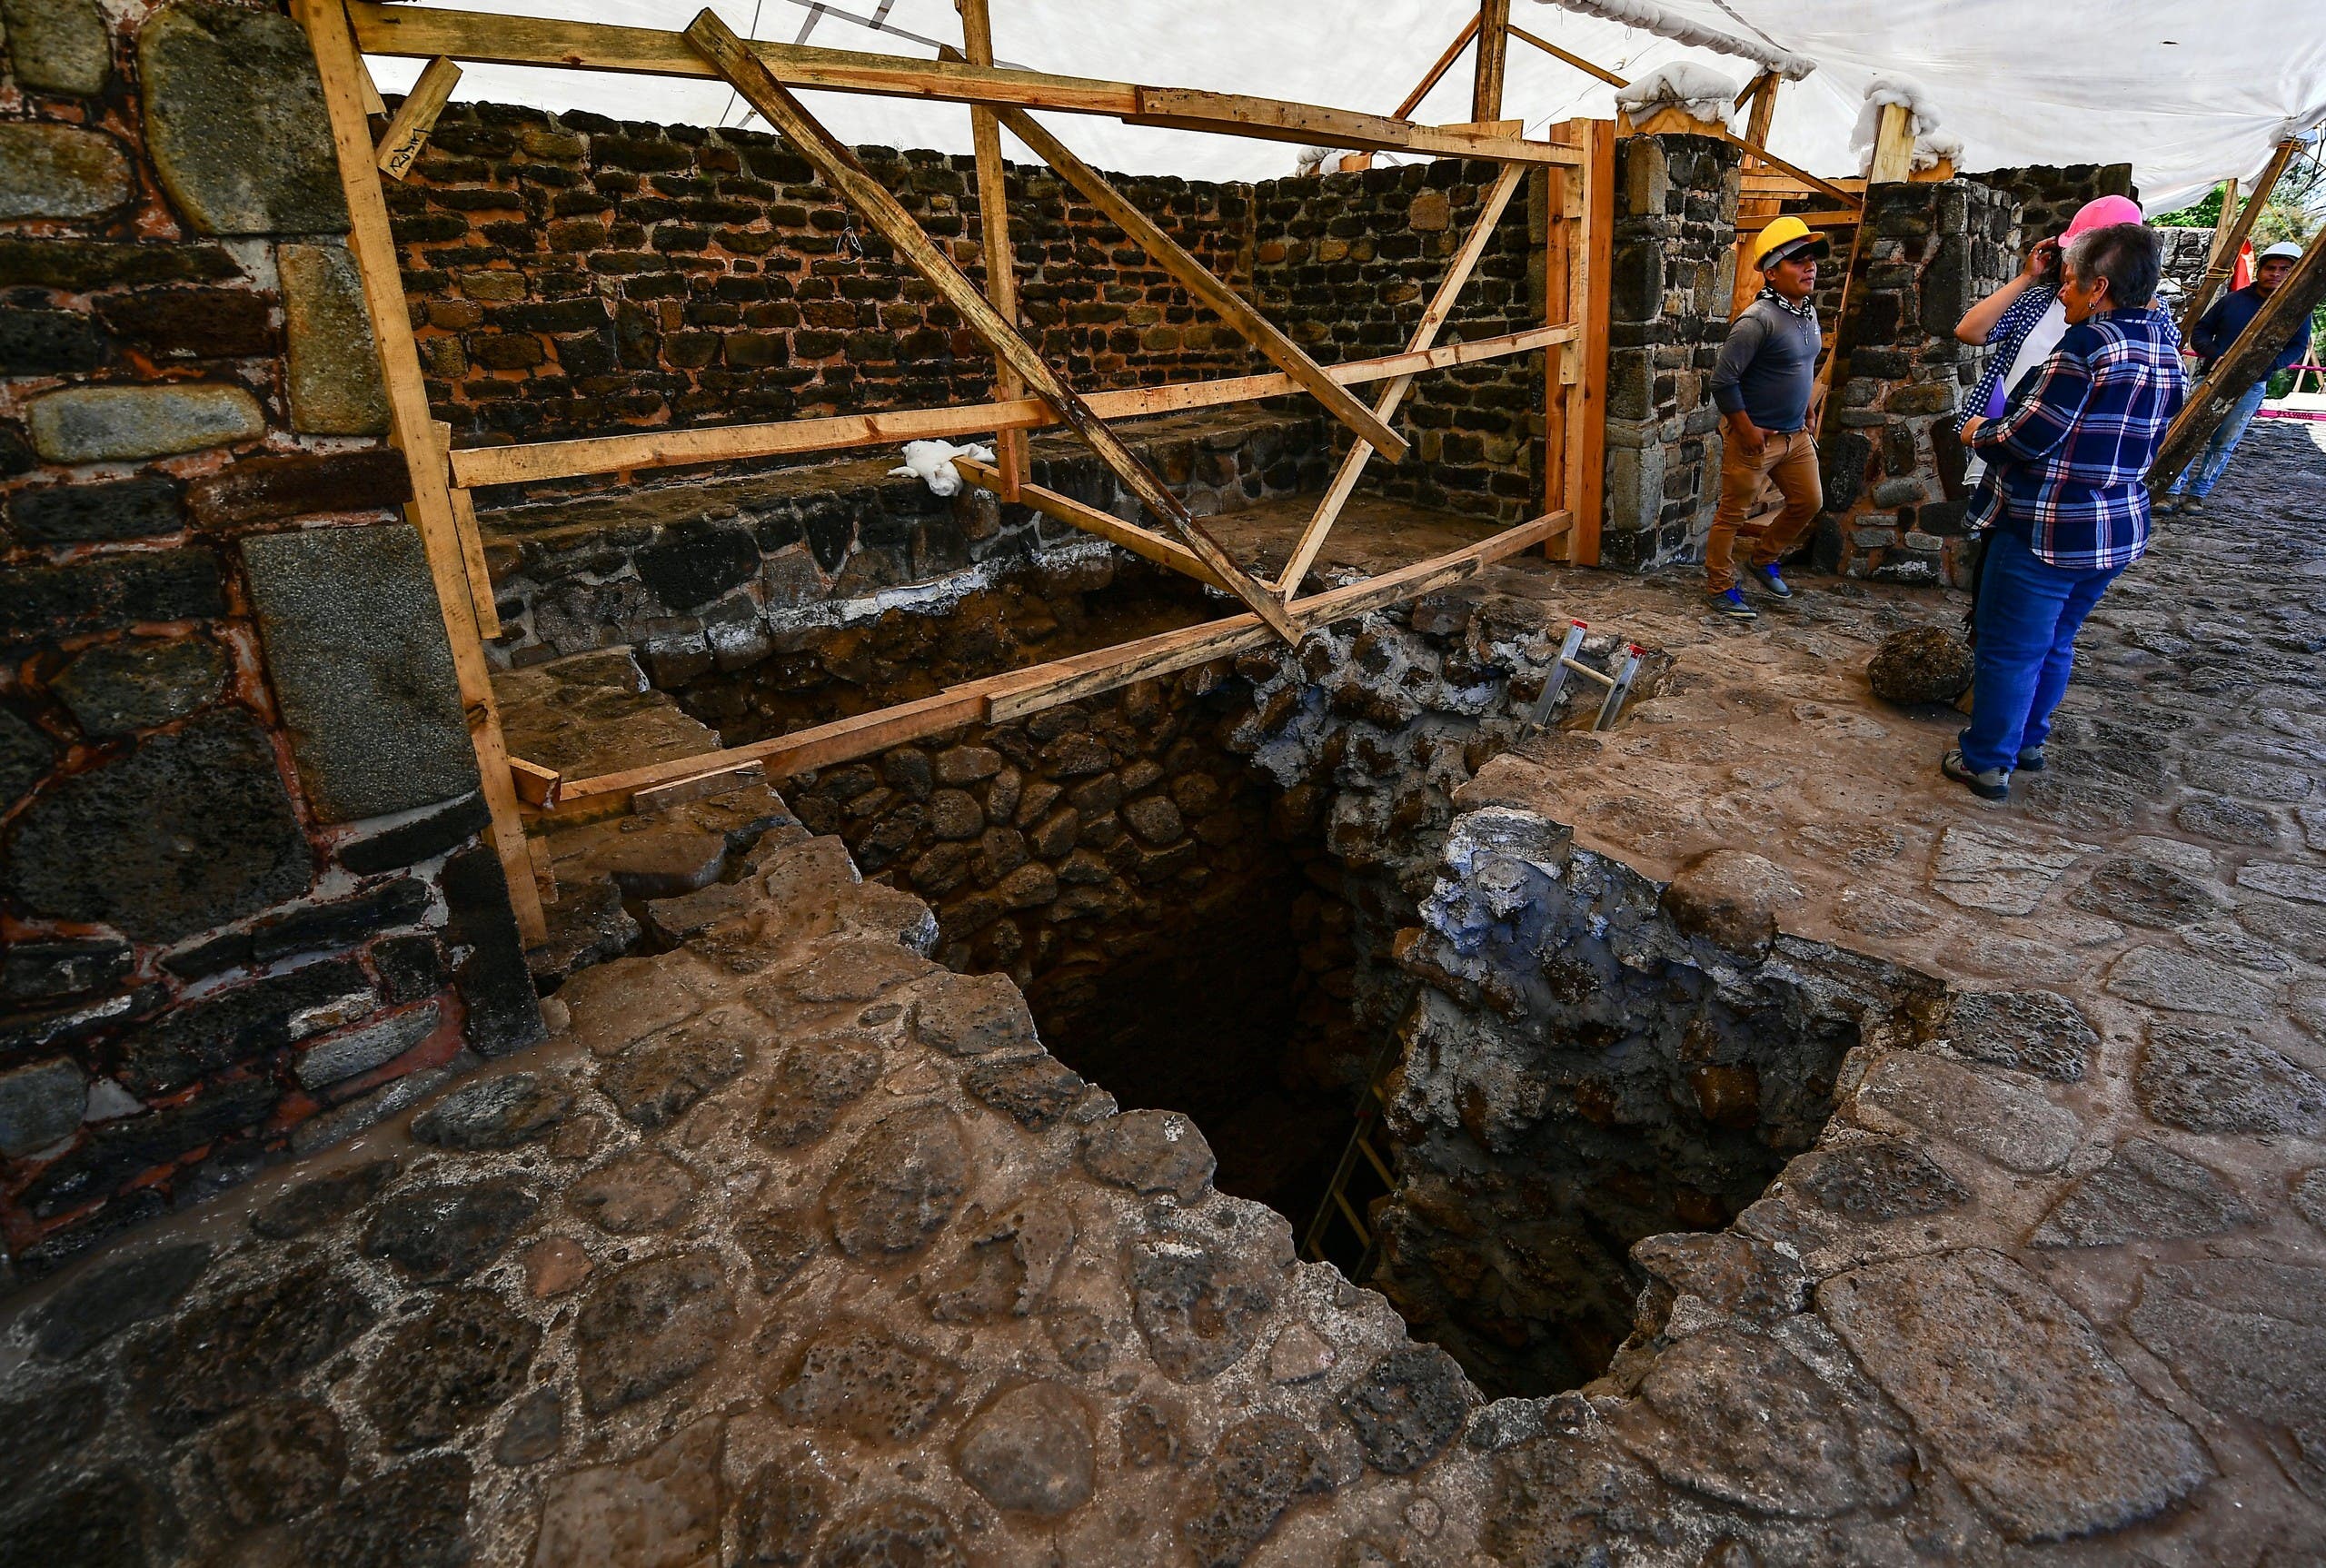 اكتشاف "معبد المطر" في المكسيك بالصدفة 10bc910d-9988-47a9-b2fe-3e4a23155804